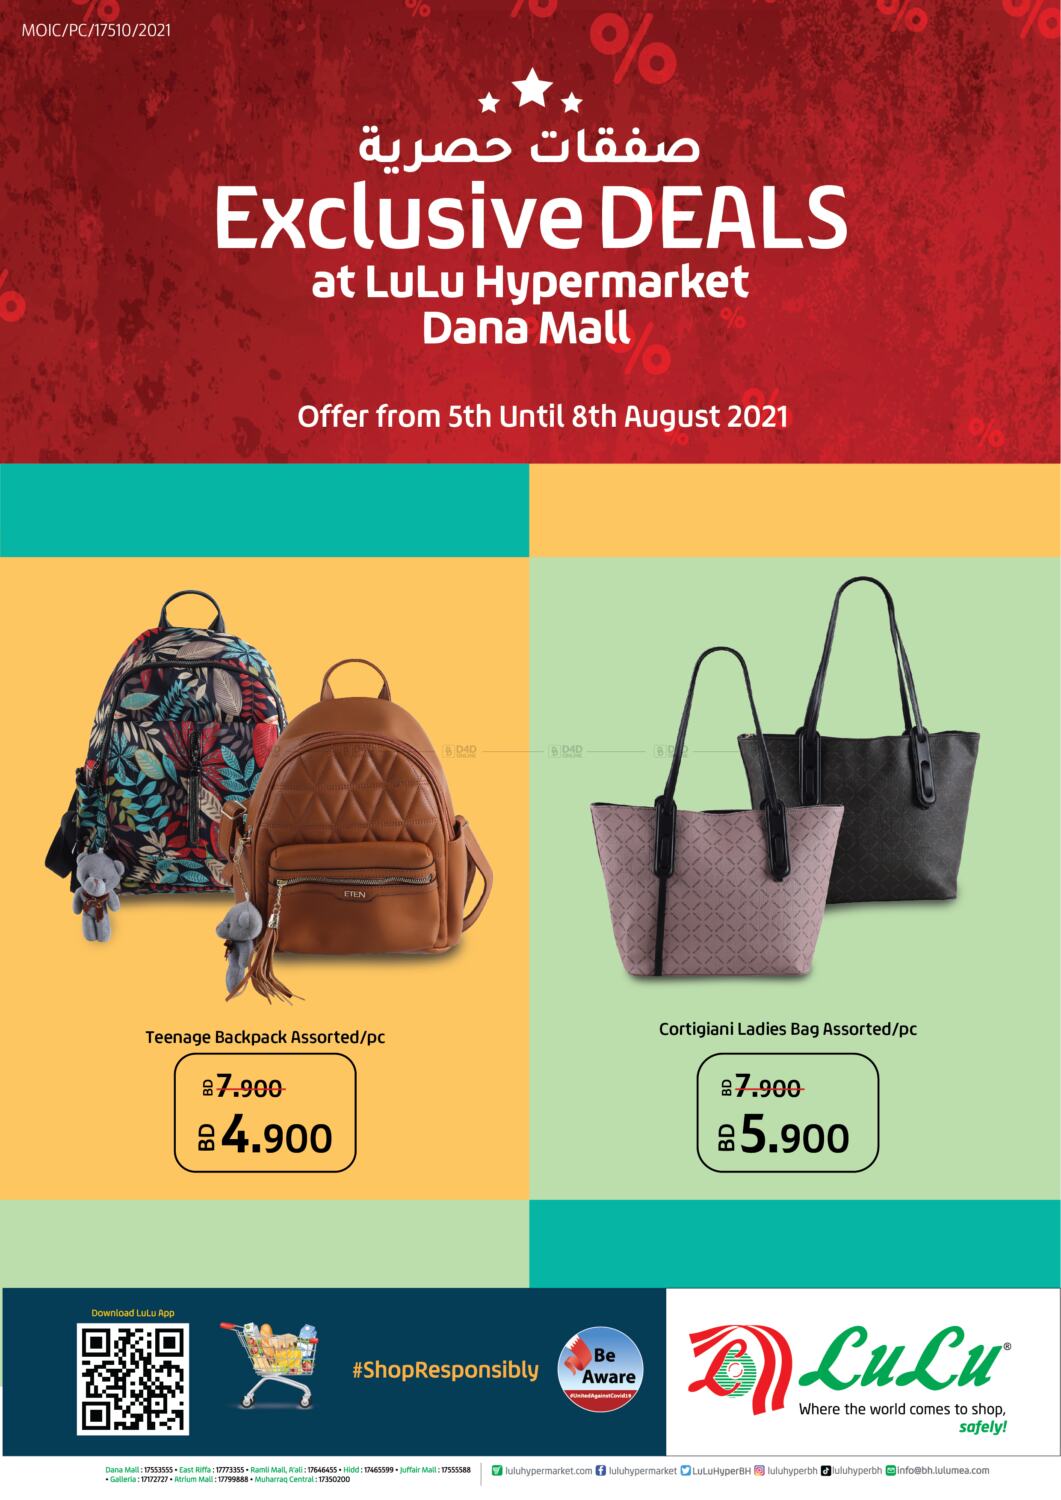 Ladies Bag In Lulu Hypermarket